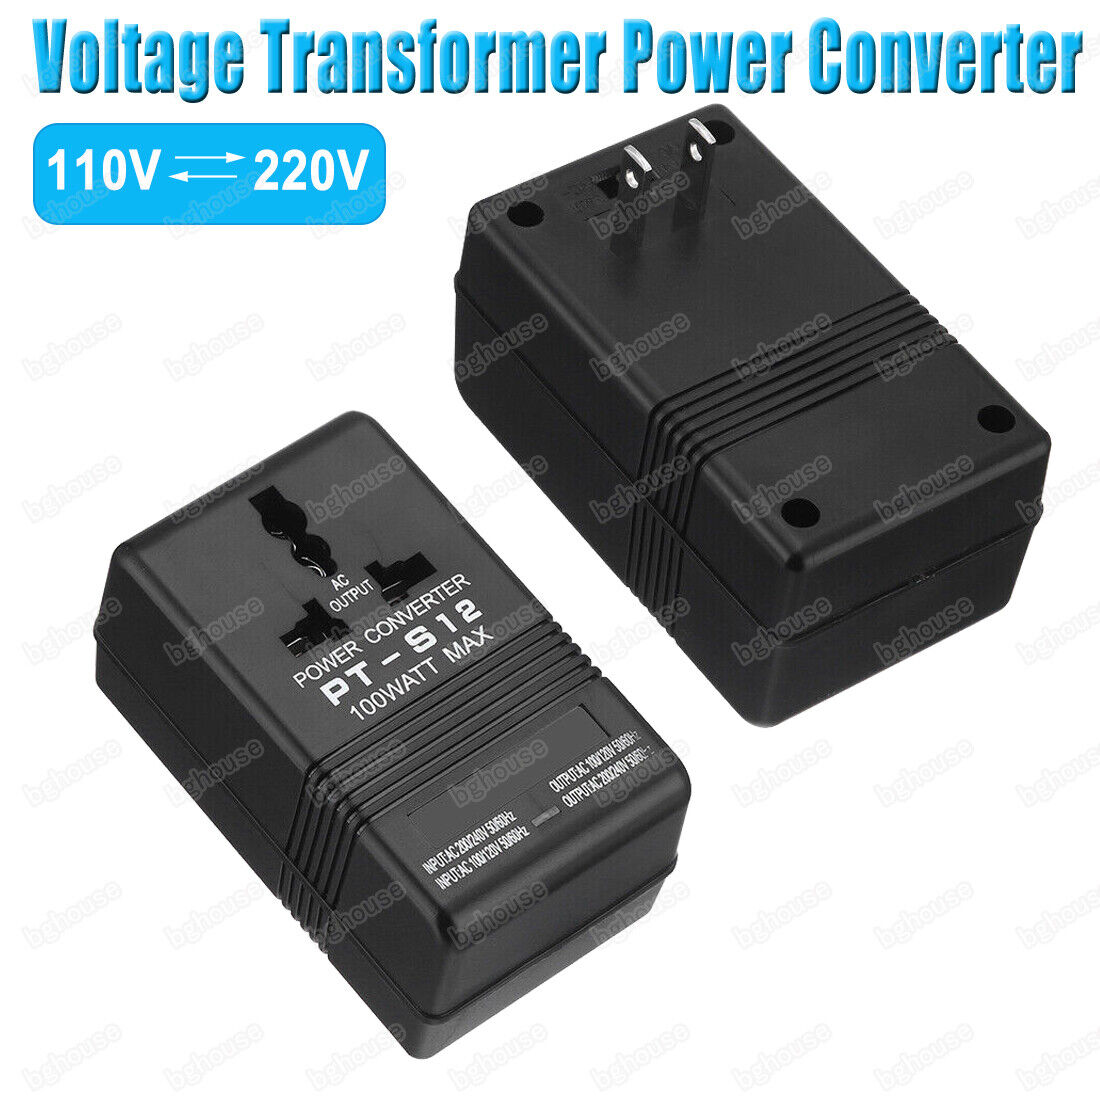 100W AC 110V/120V to 220V/240V Dual Voltage Transformer Power Converter US Plug